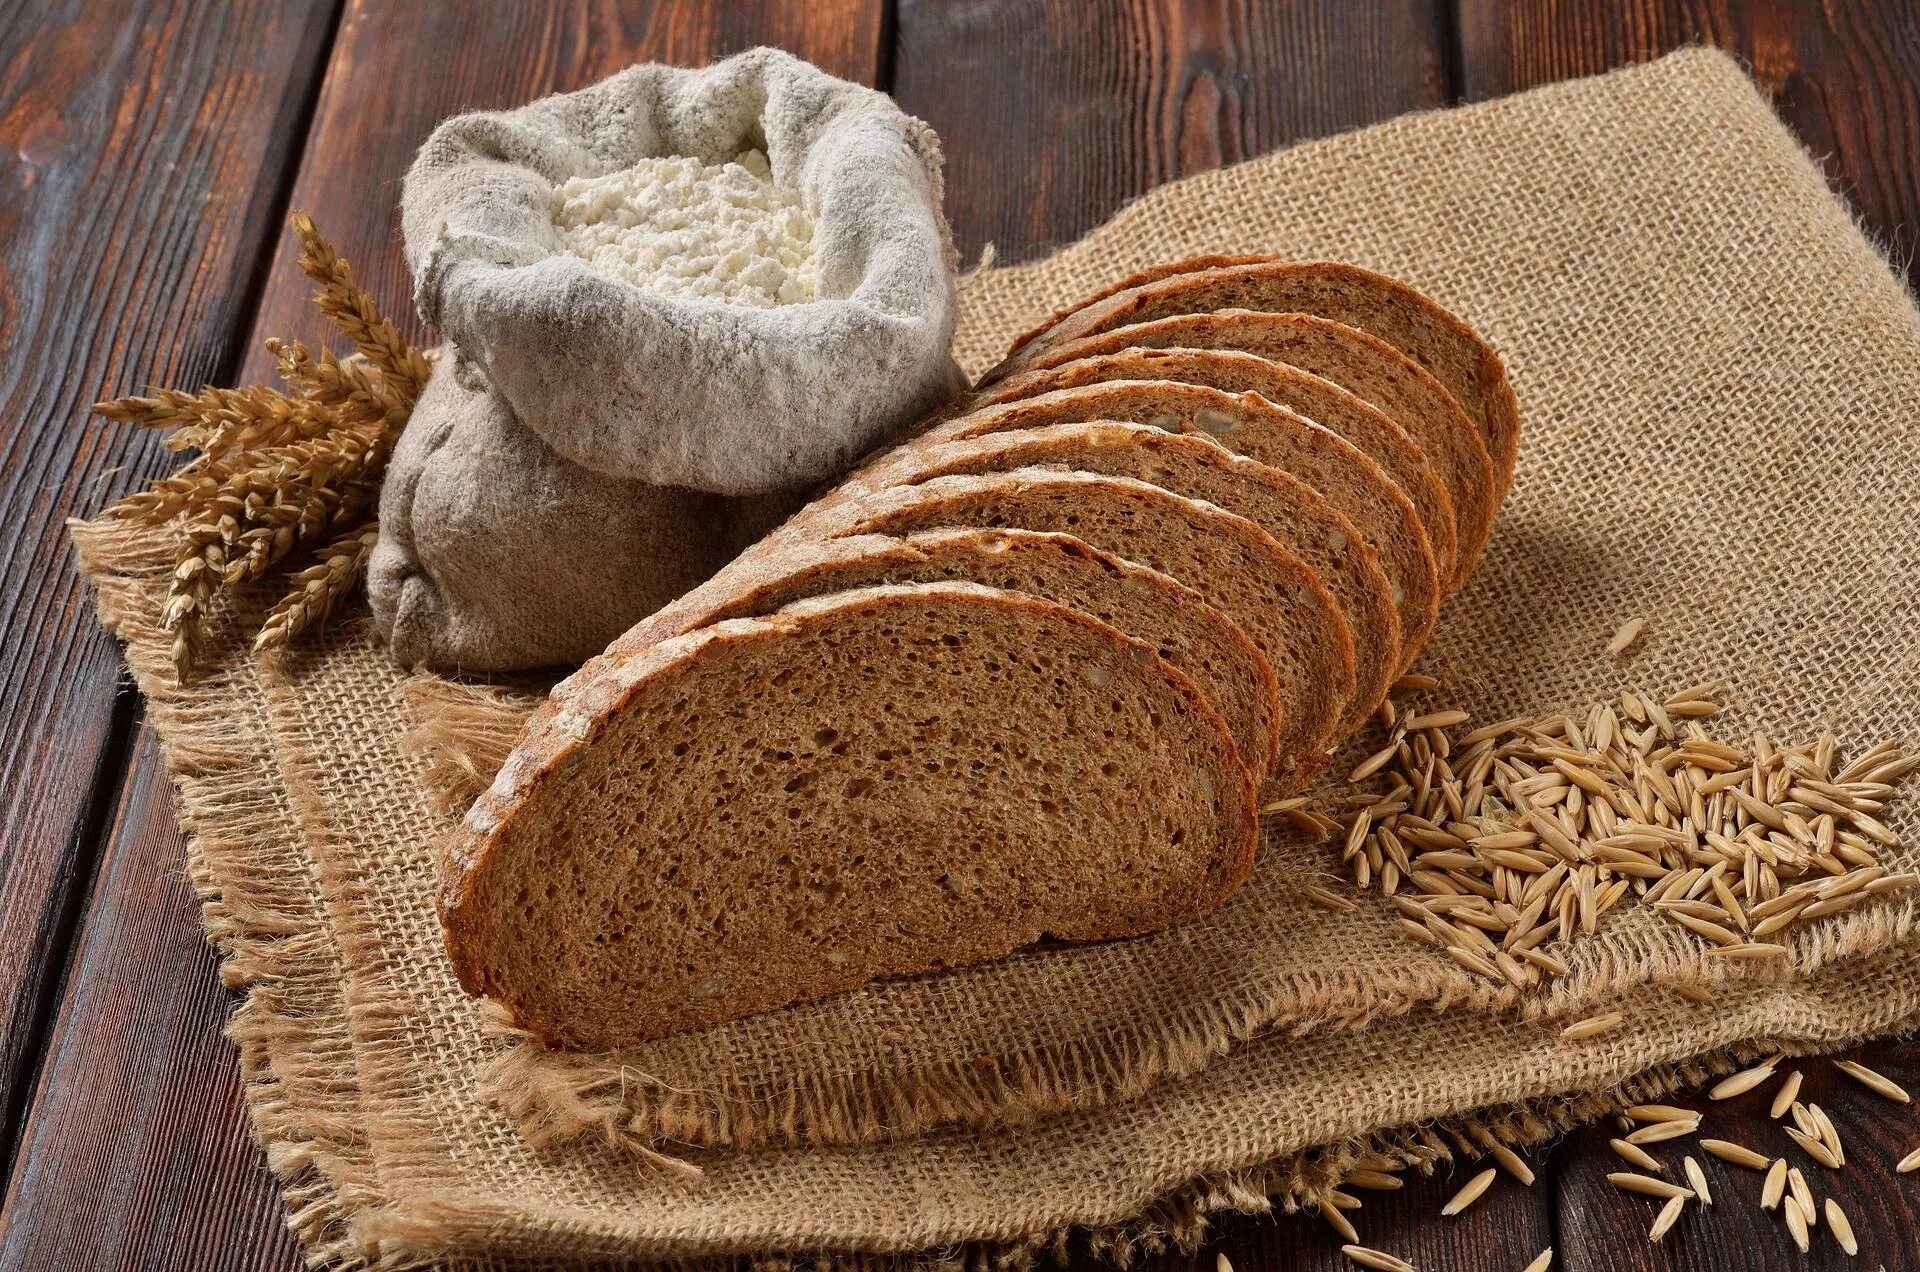 Ржаной отрубной хлеб. Хлеб с отрубями подовый. Мука для хлеба. Хлеб грубого помола.